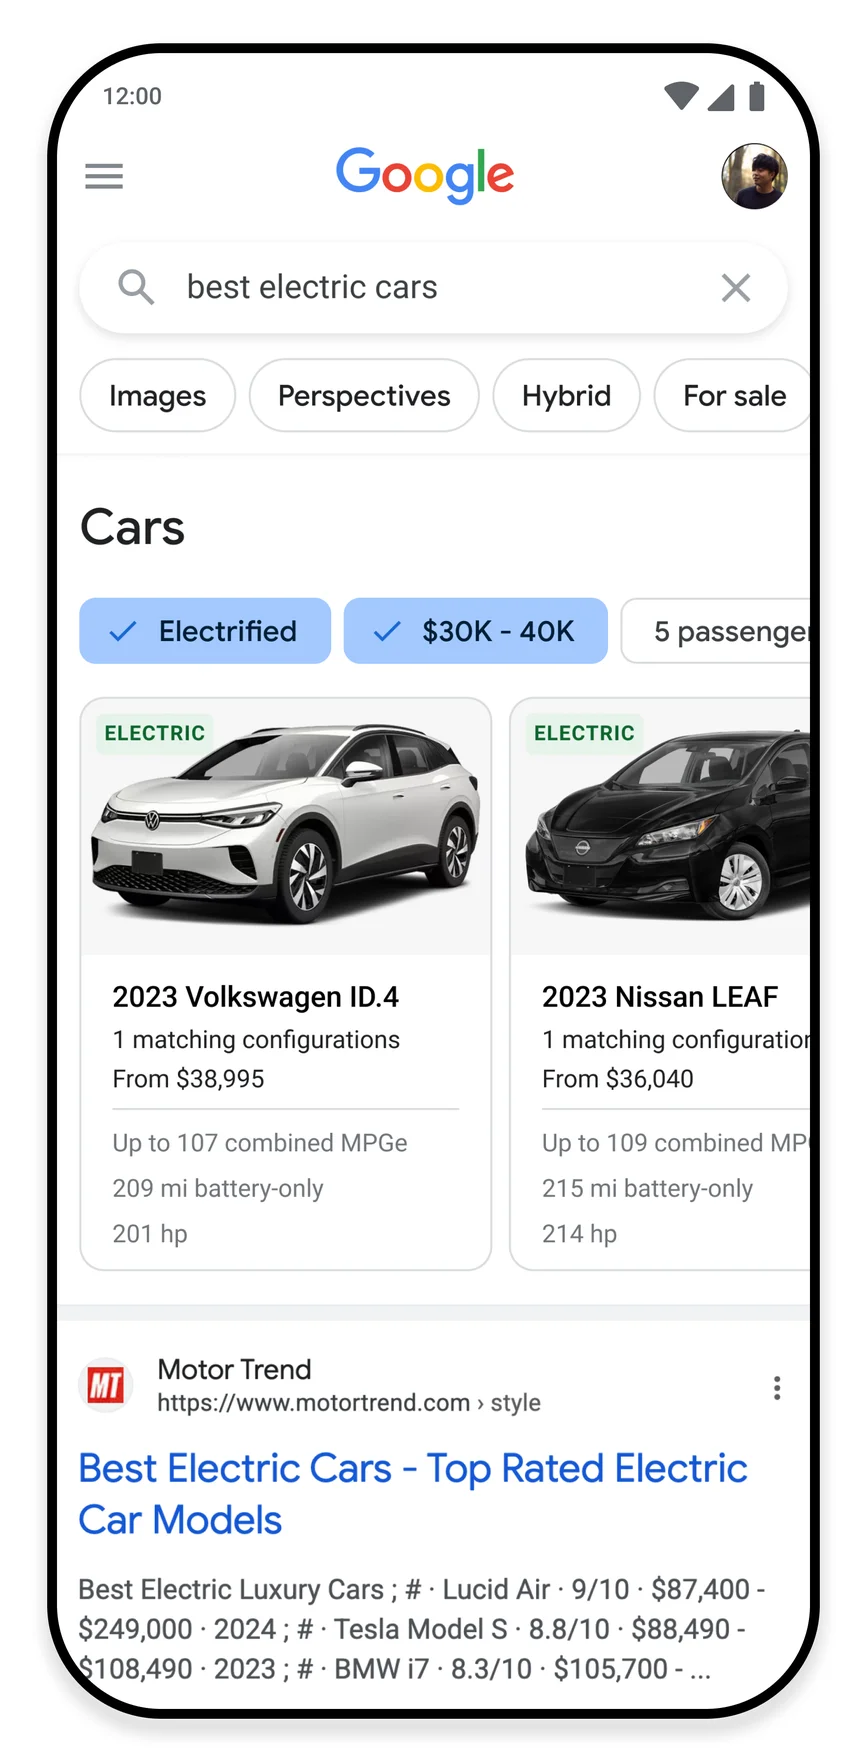 L'image montre des facteurs tels que le prix et l'autonomie de la batterie lors d'une recherche d'une voiture électrique.